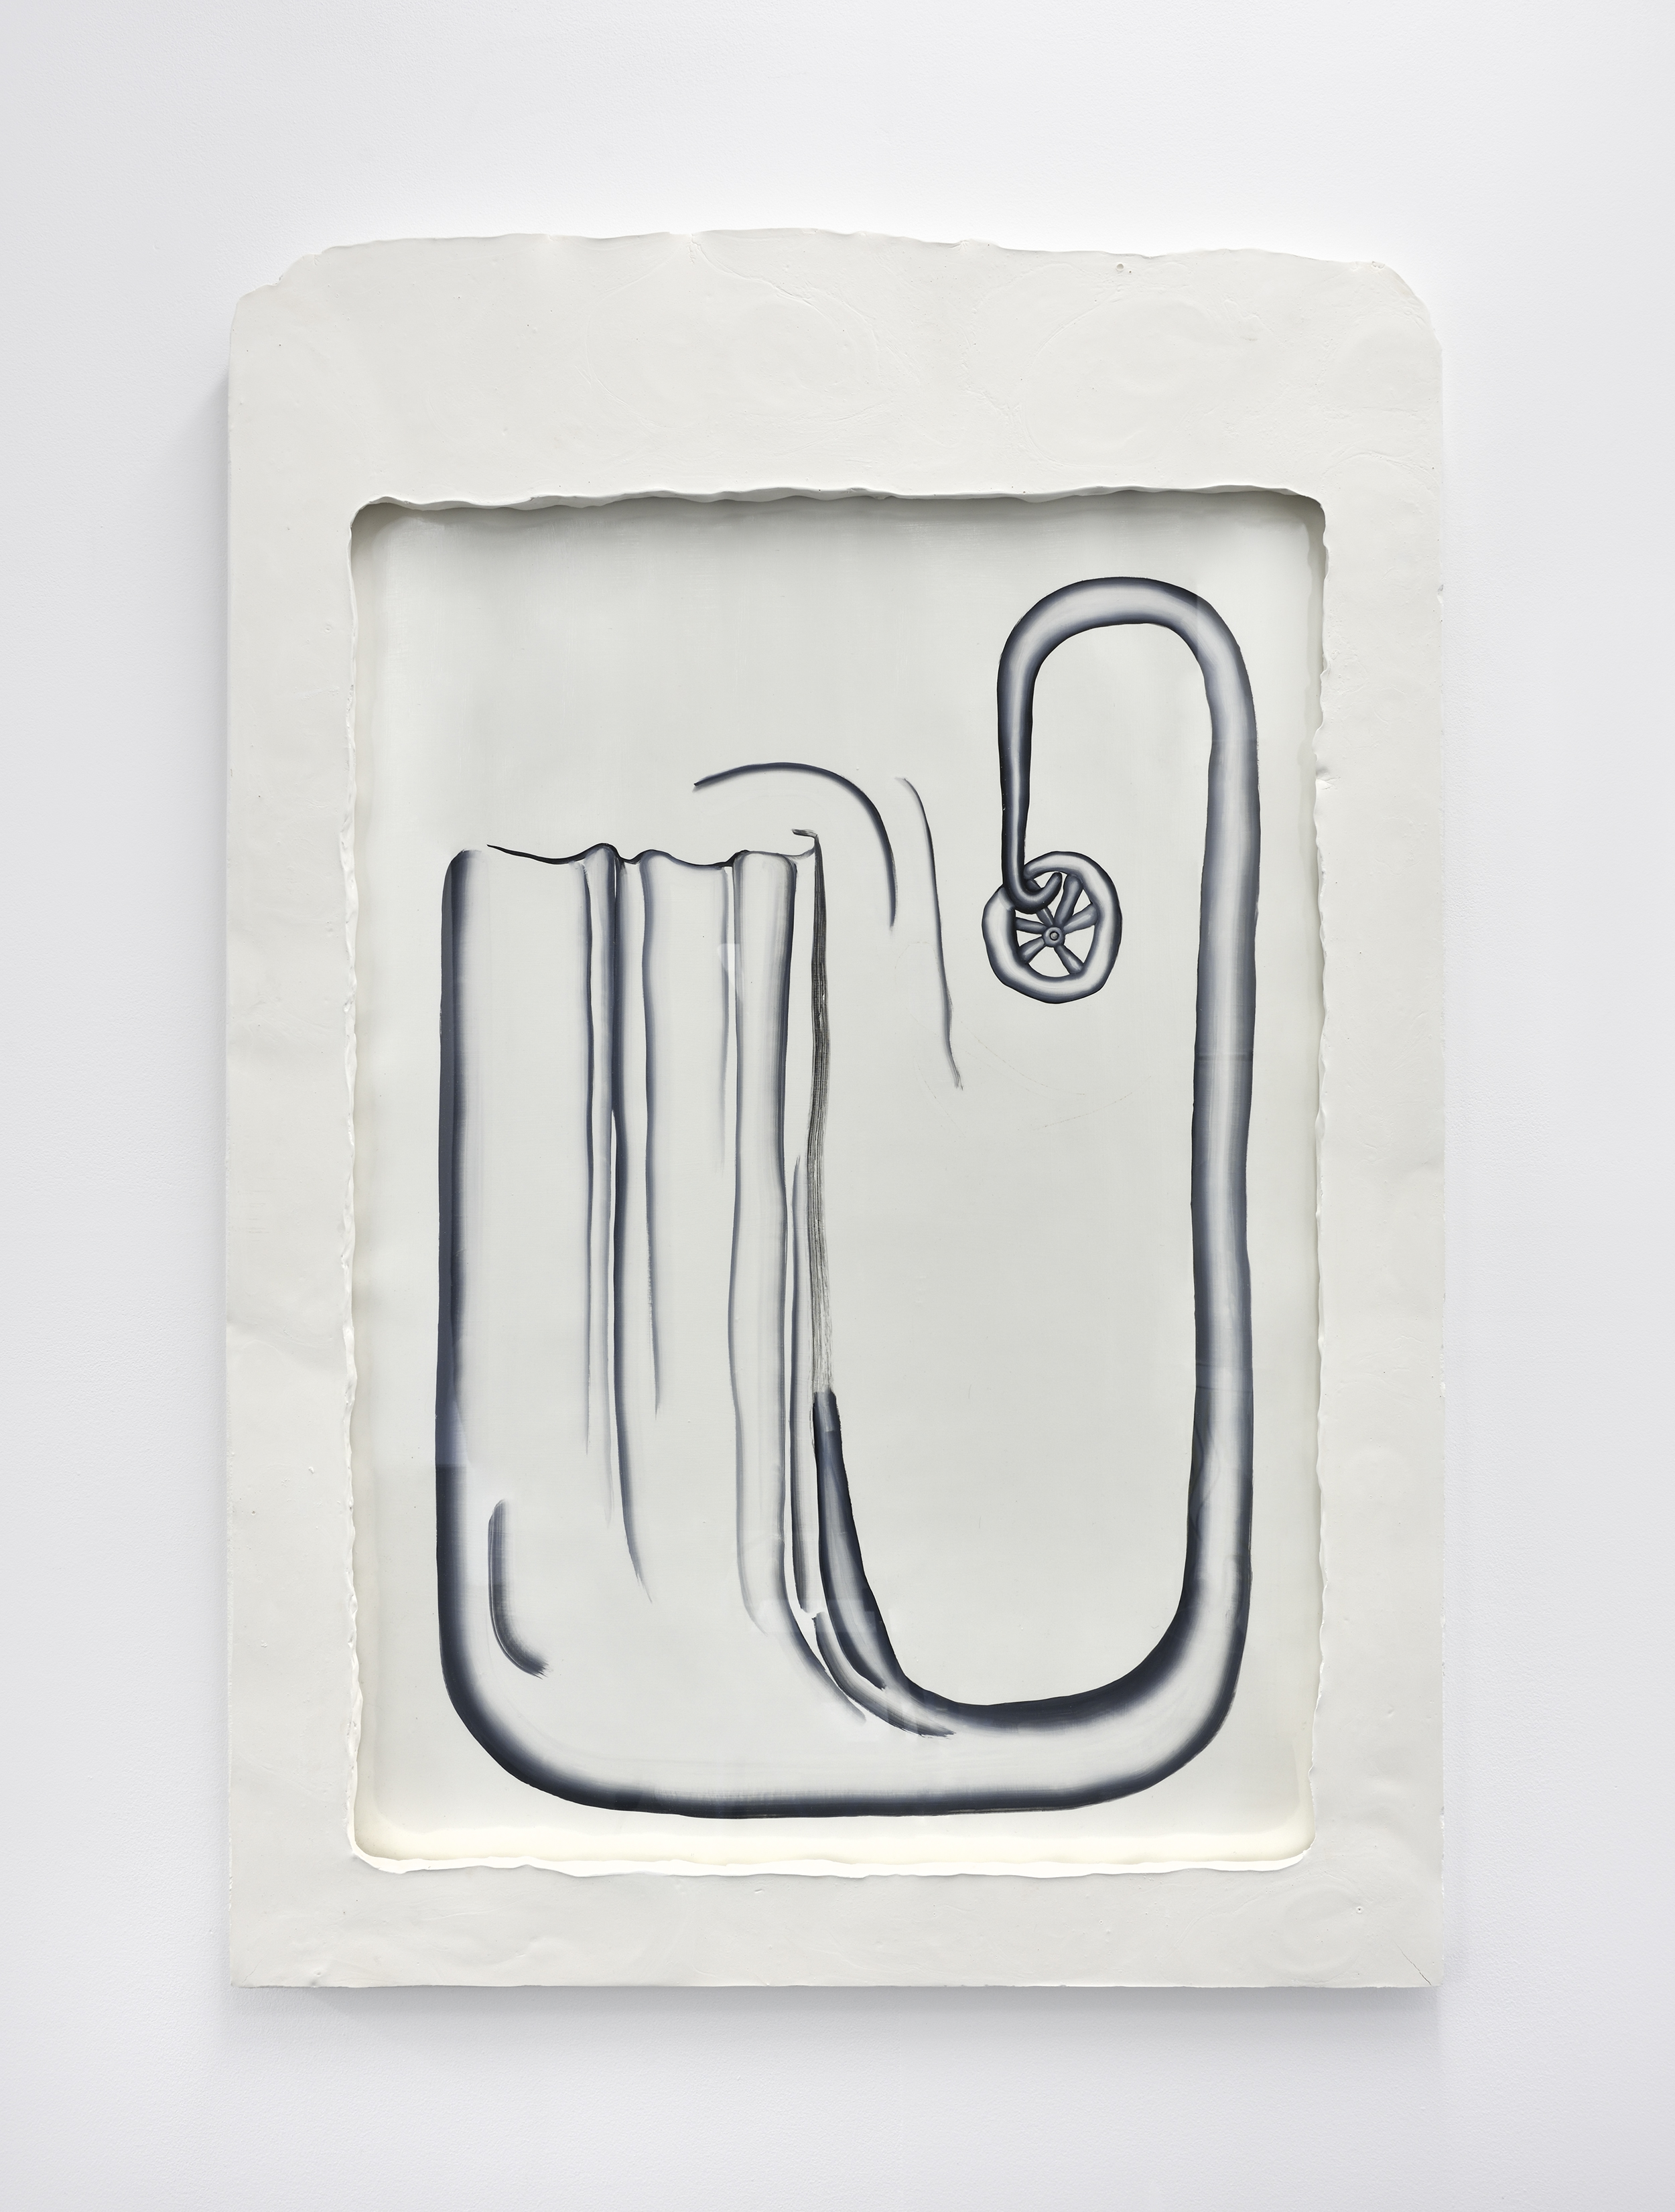 Statique de la chute - Huile sur papier, cadre en plâtre - 100 x 70 cm - 2016 ©Rebecca Fanuele